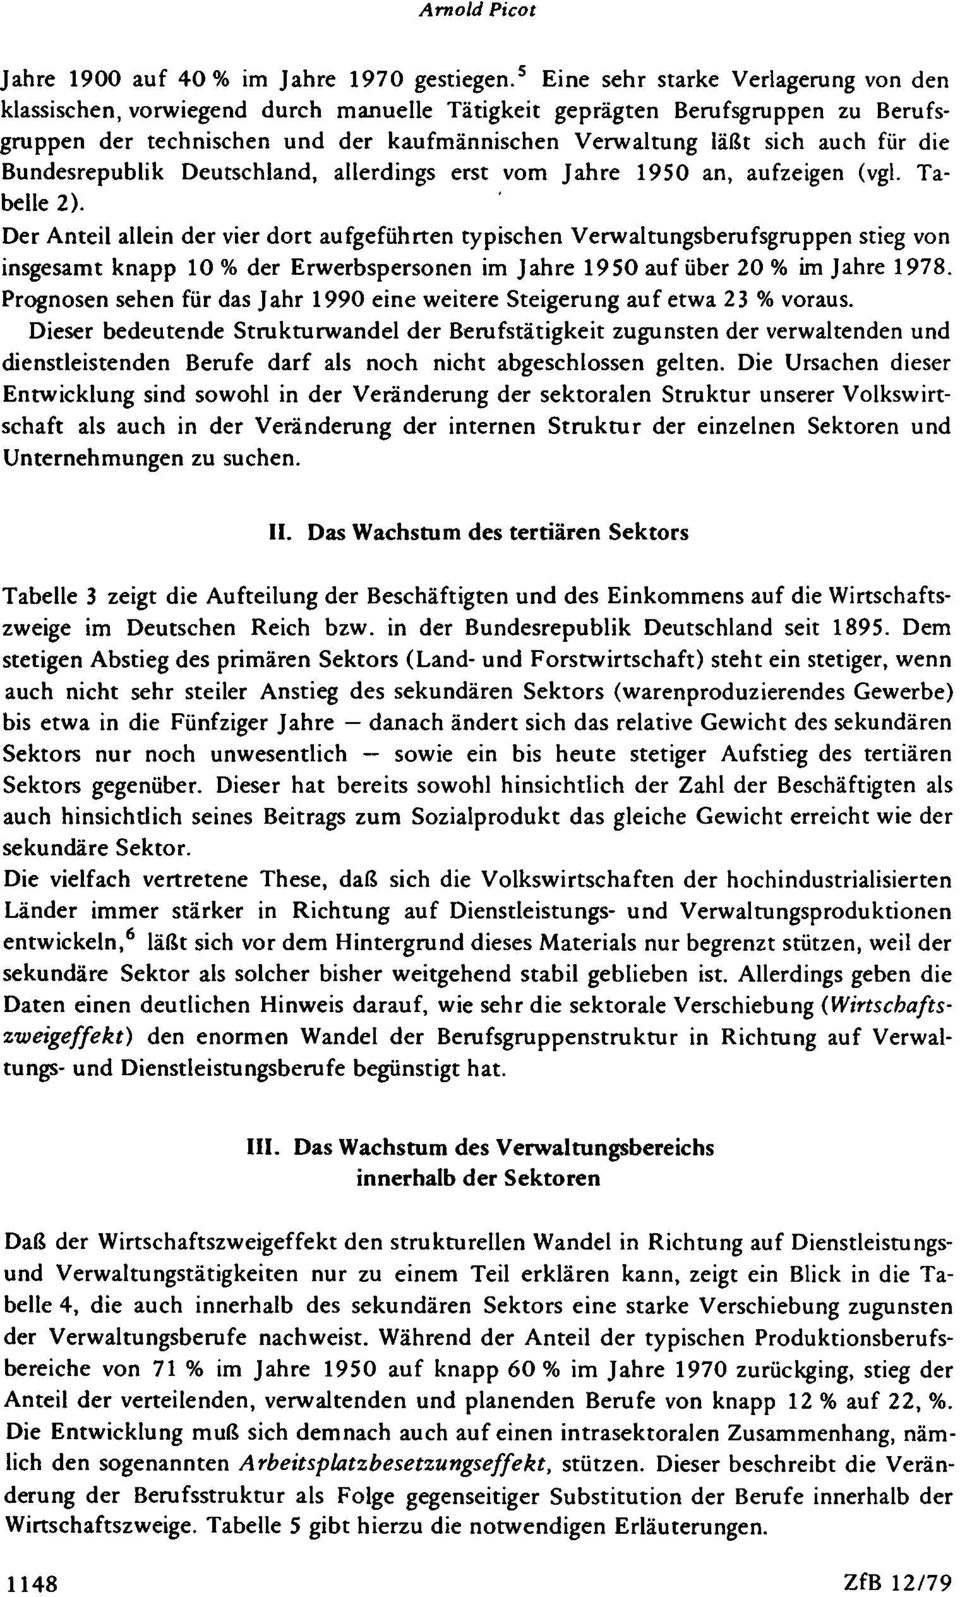 die Bundesrepublik Deutschland, allerdings erst vom Jahre 1950 an, aufzeigen (vgl. Tabelle 2).